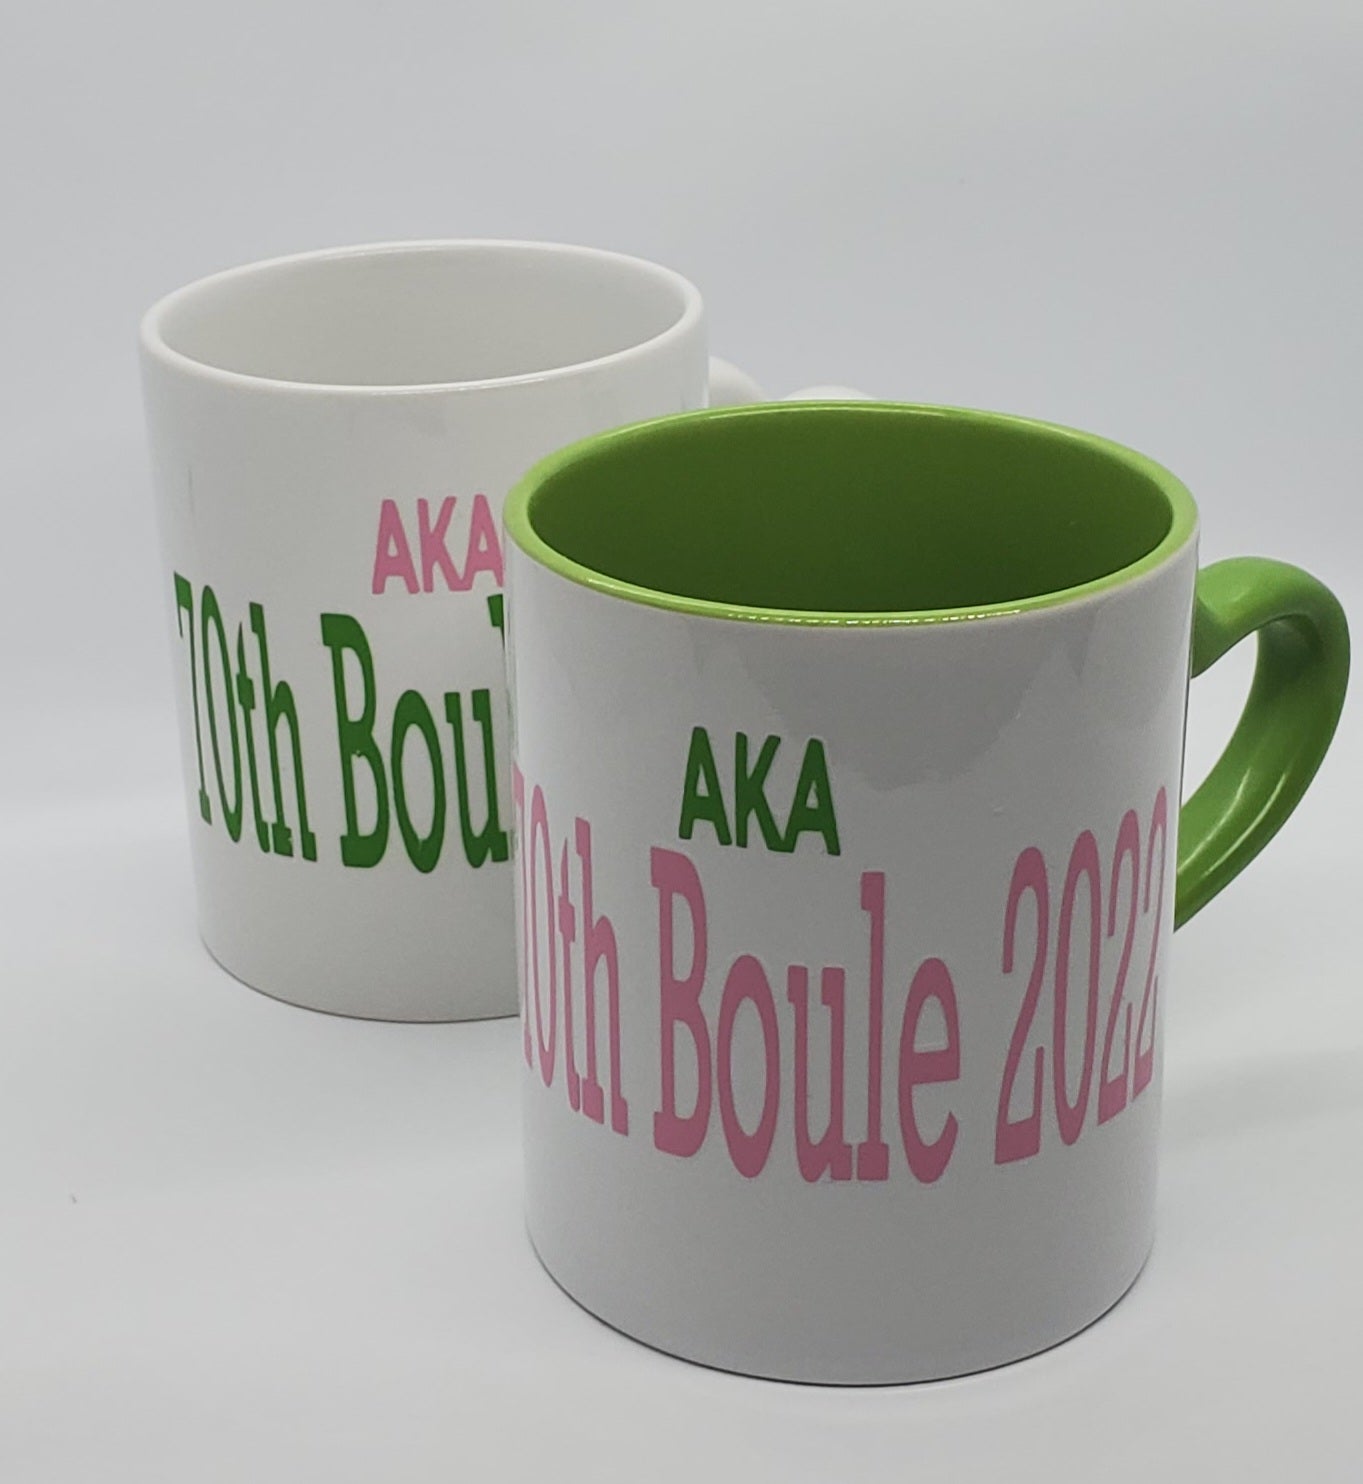 AKA 70th Boule Mugs - Limited Edition